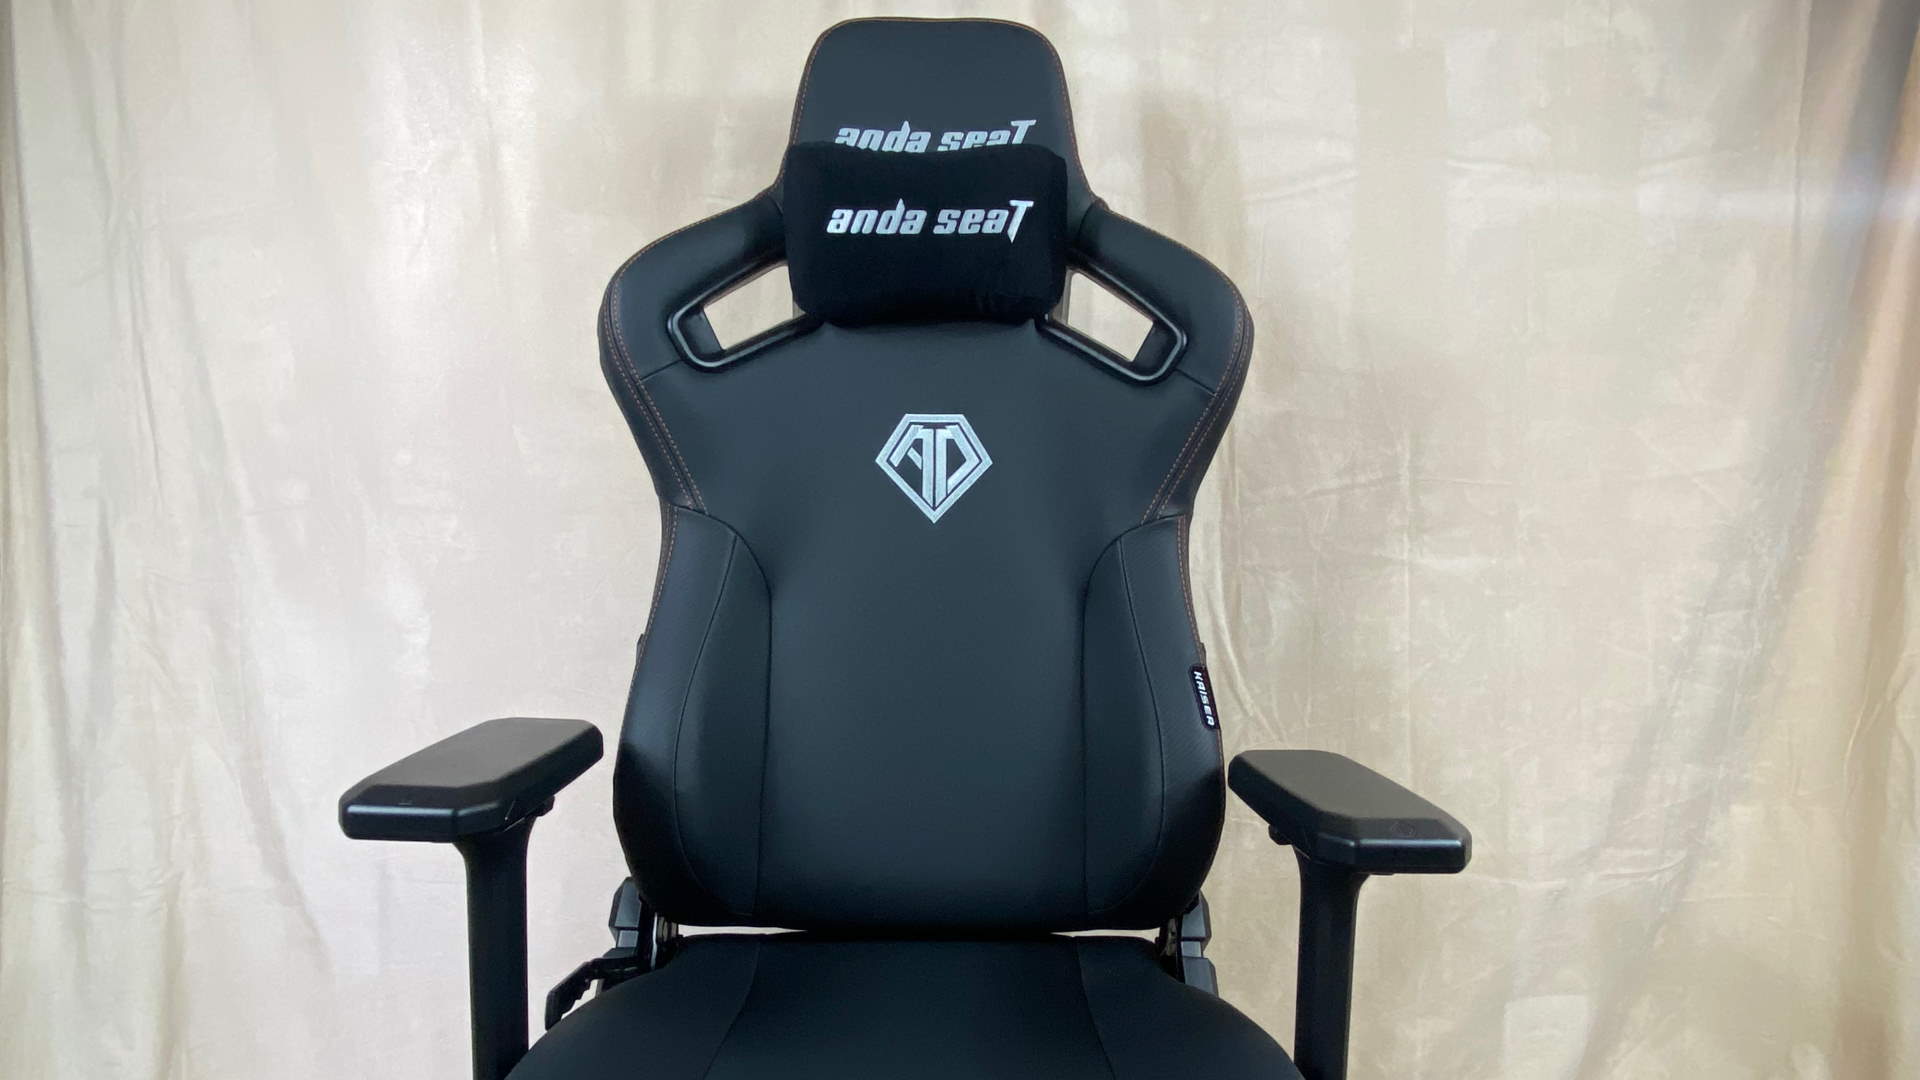 Andaseat Kaiser 3 gaming chair